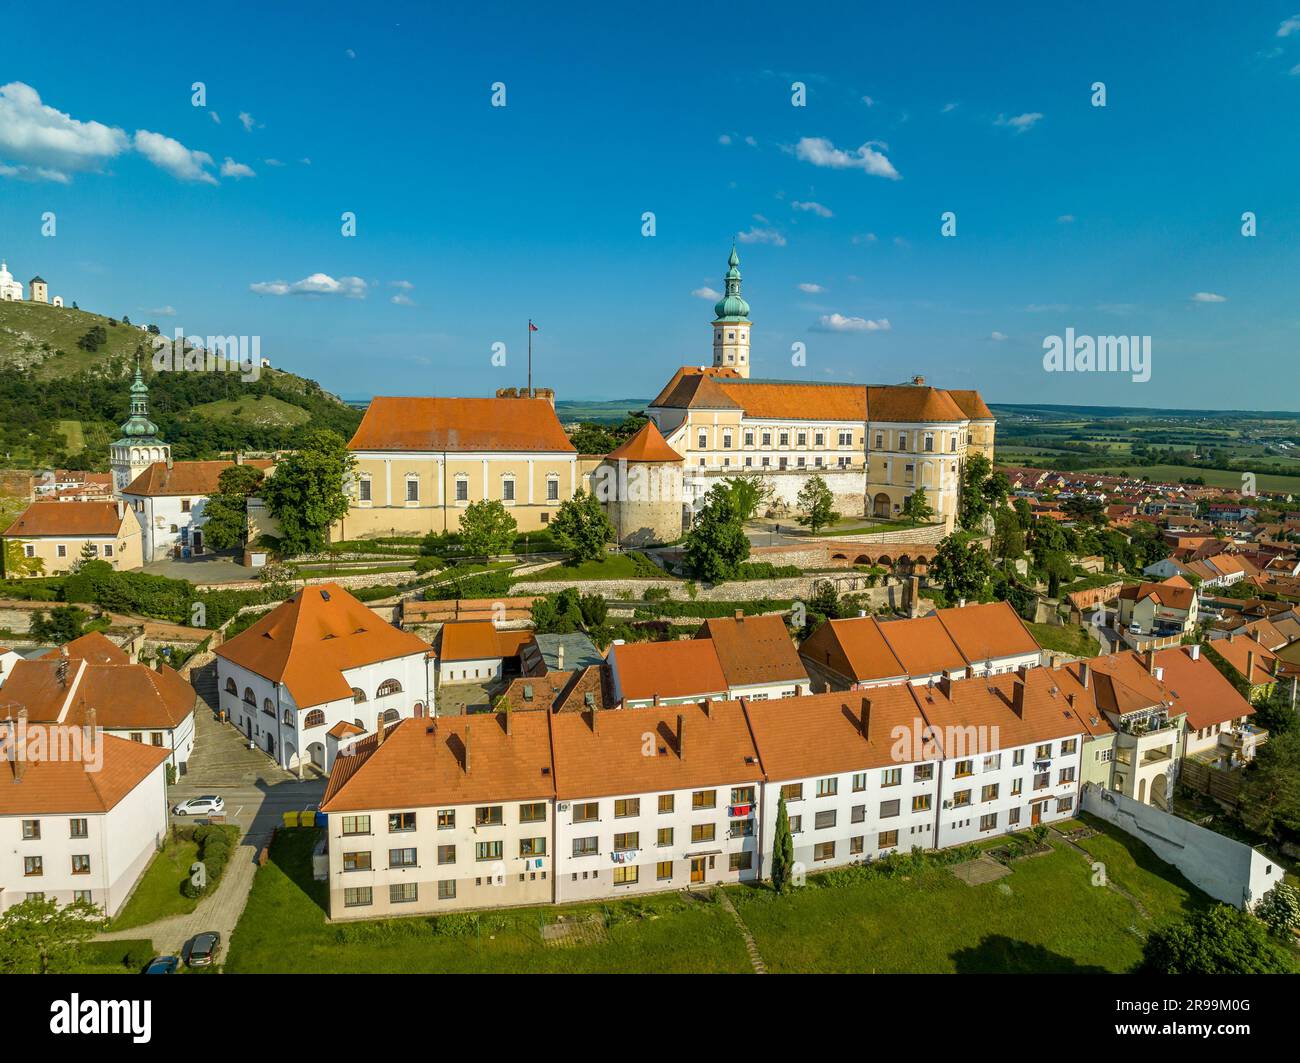 Vue aérienne du château baroque de Mikulov en Bohême du Sud, également appelé Nikodsburg avec des tours médiévales entourées de maisons de style communiste Banque D'Images